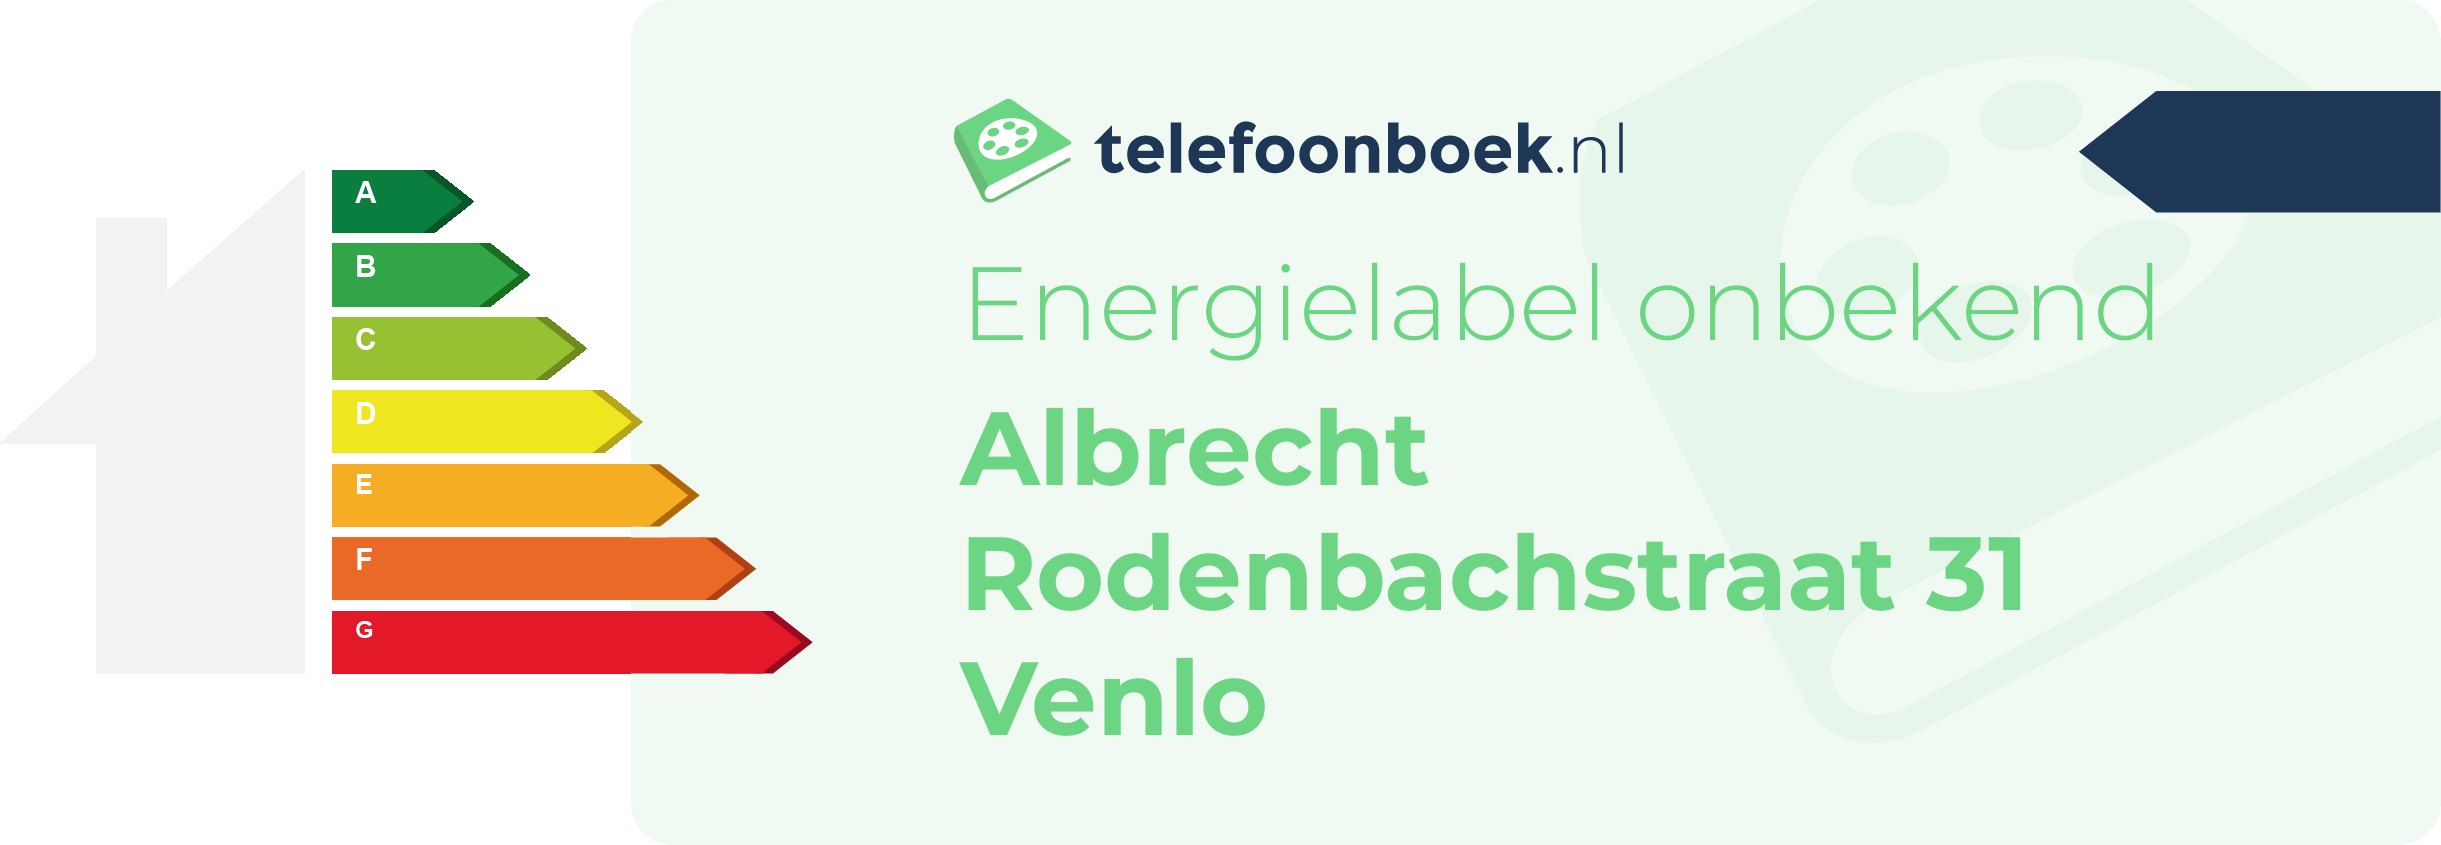 Energielabel Albrecht Rodenbachstraat 31 Venlo